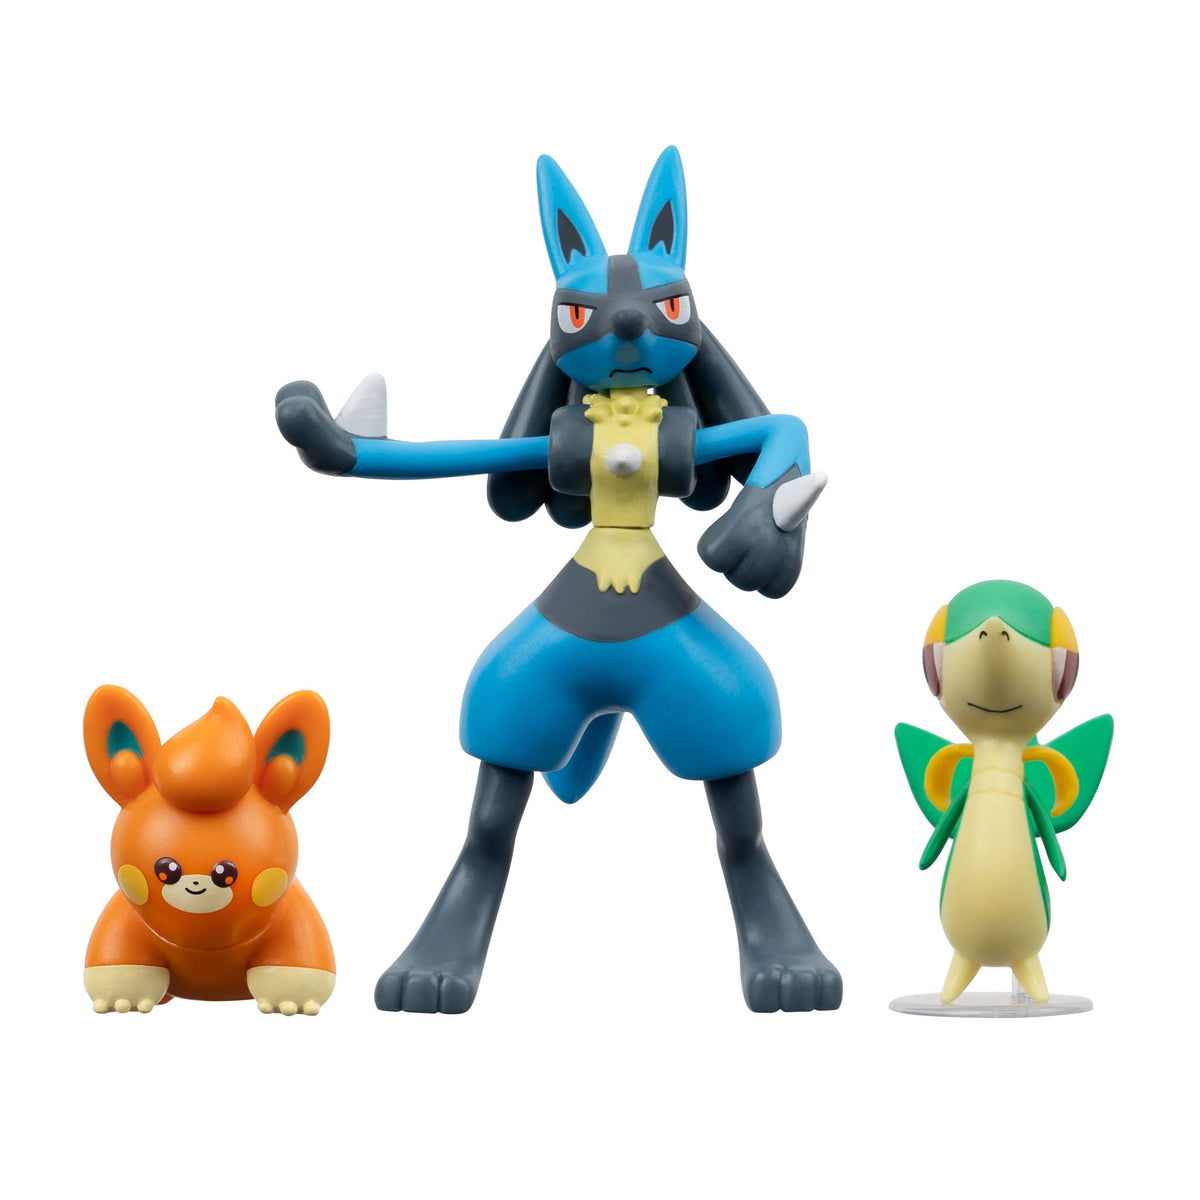 Pokémon - Serpifeu, Pamo & Lucario - Battle Figures 3 -Pack (JaZwares)